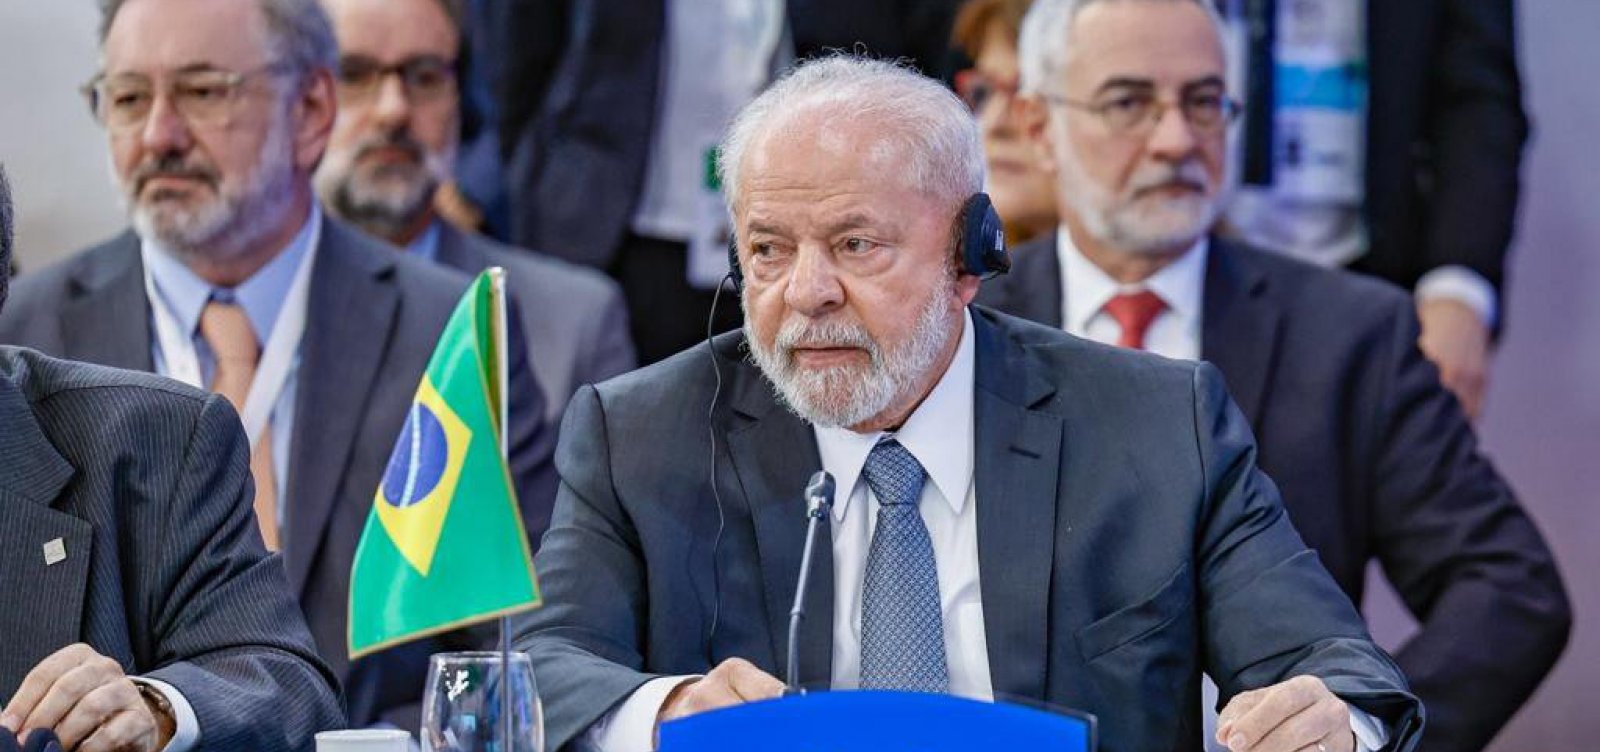 Exigências feitas pela União Europeia são inaceitáveis, diz Lula em cúpula do Mercosul